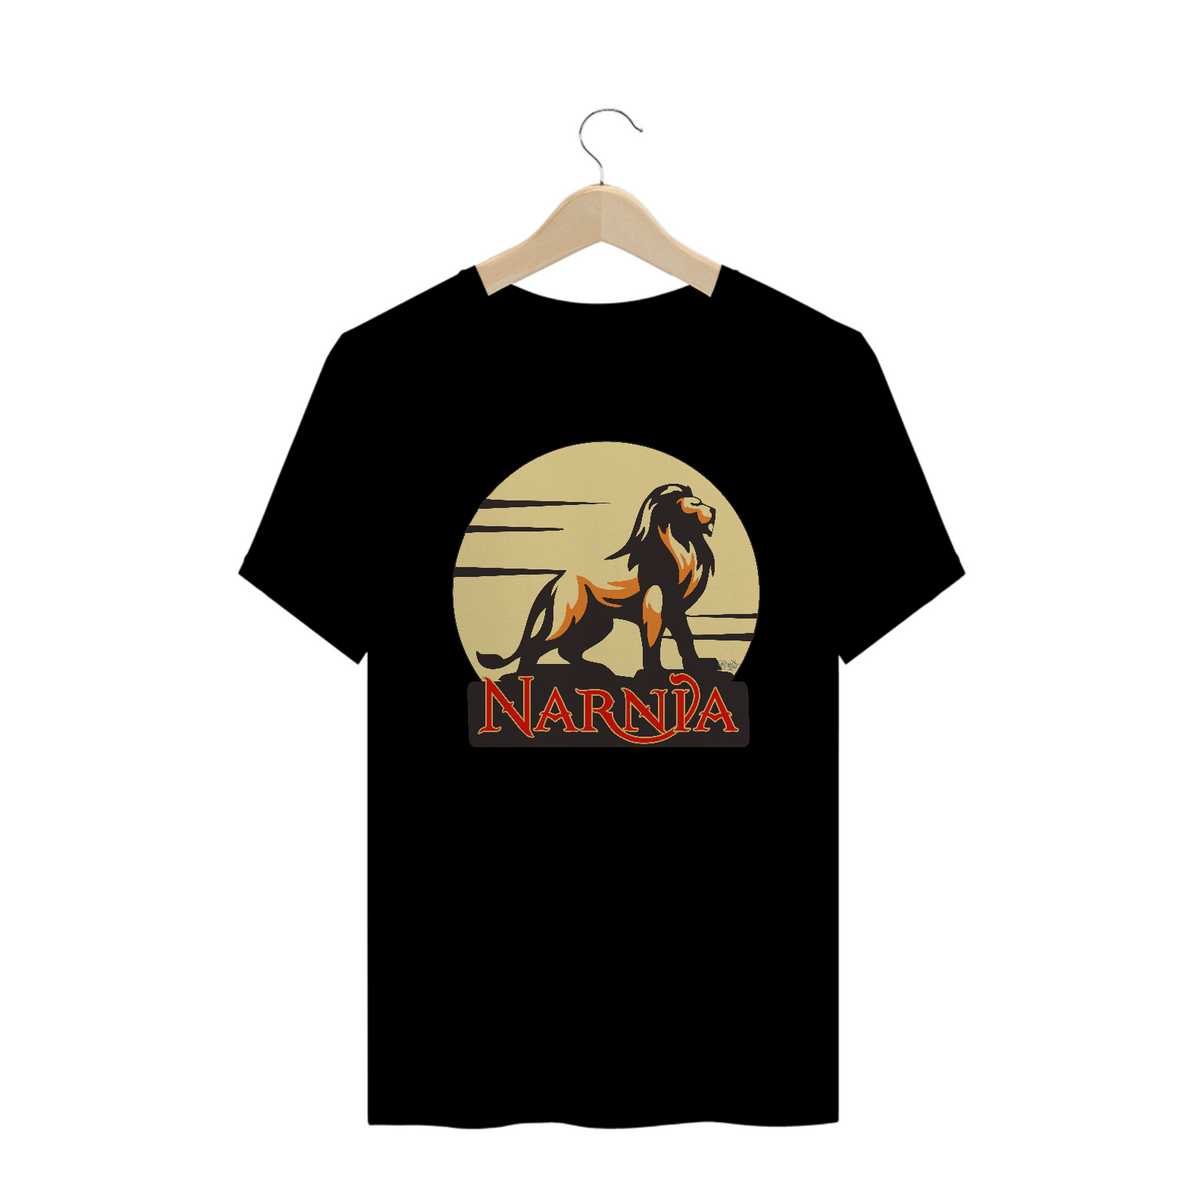 Nome do produto: Camiseta Narnia [As Crônicas de Nárnia]